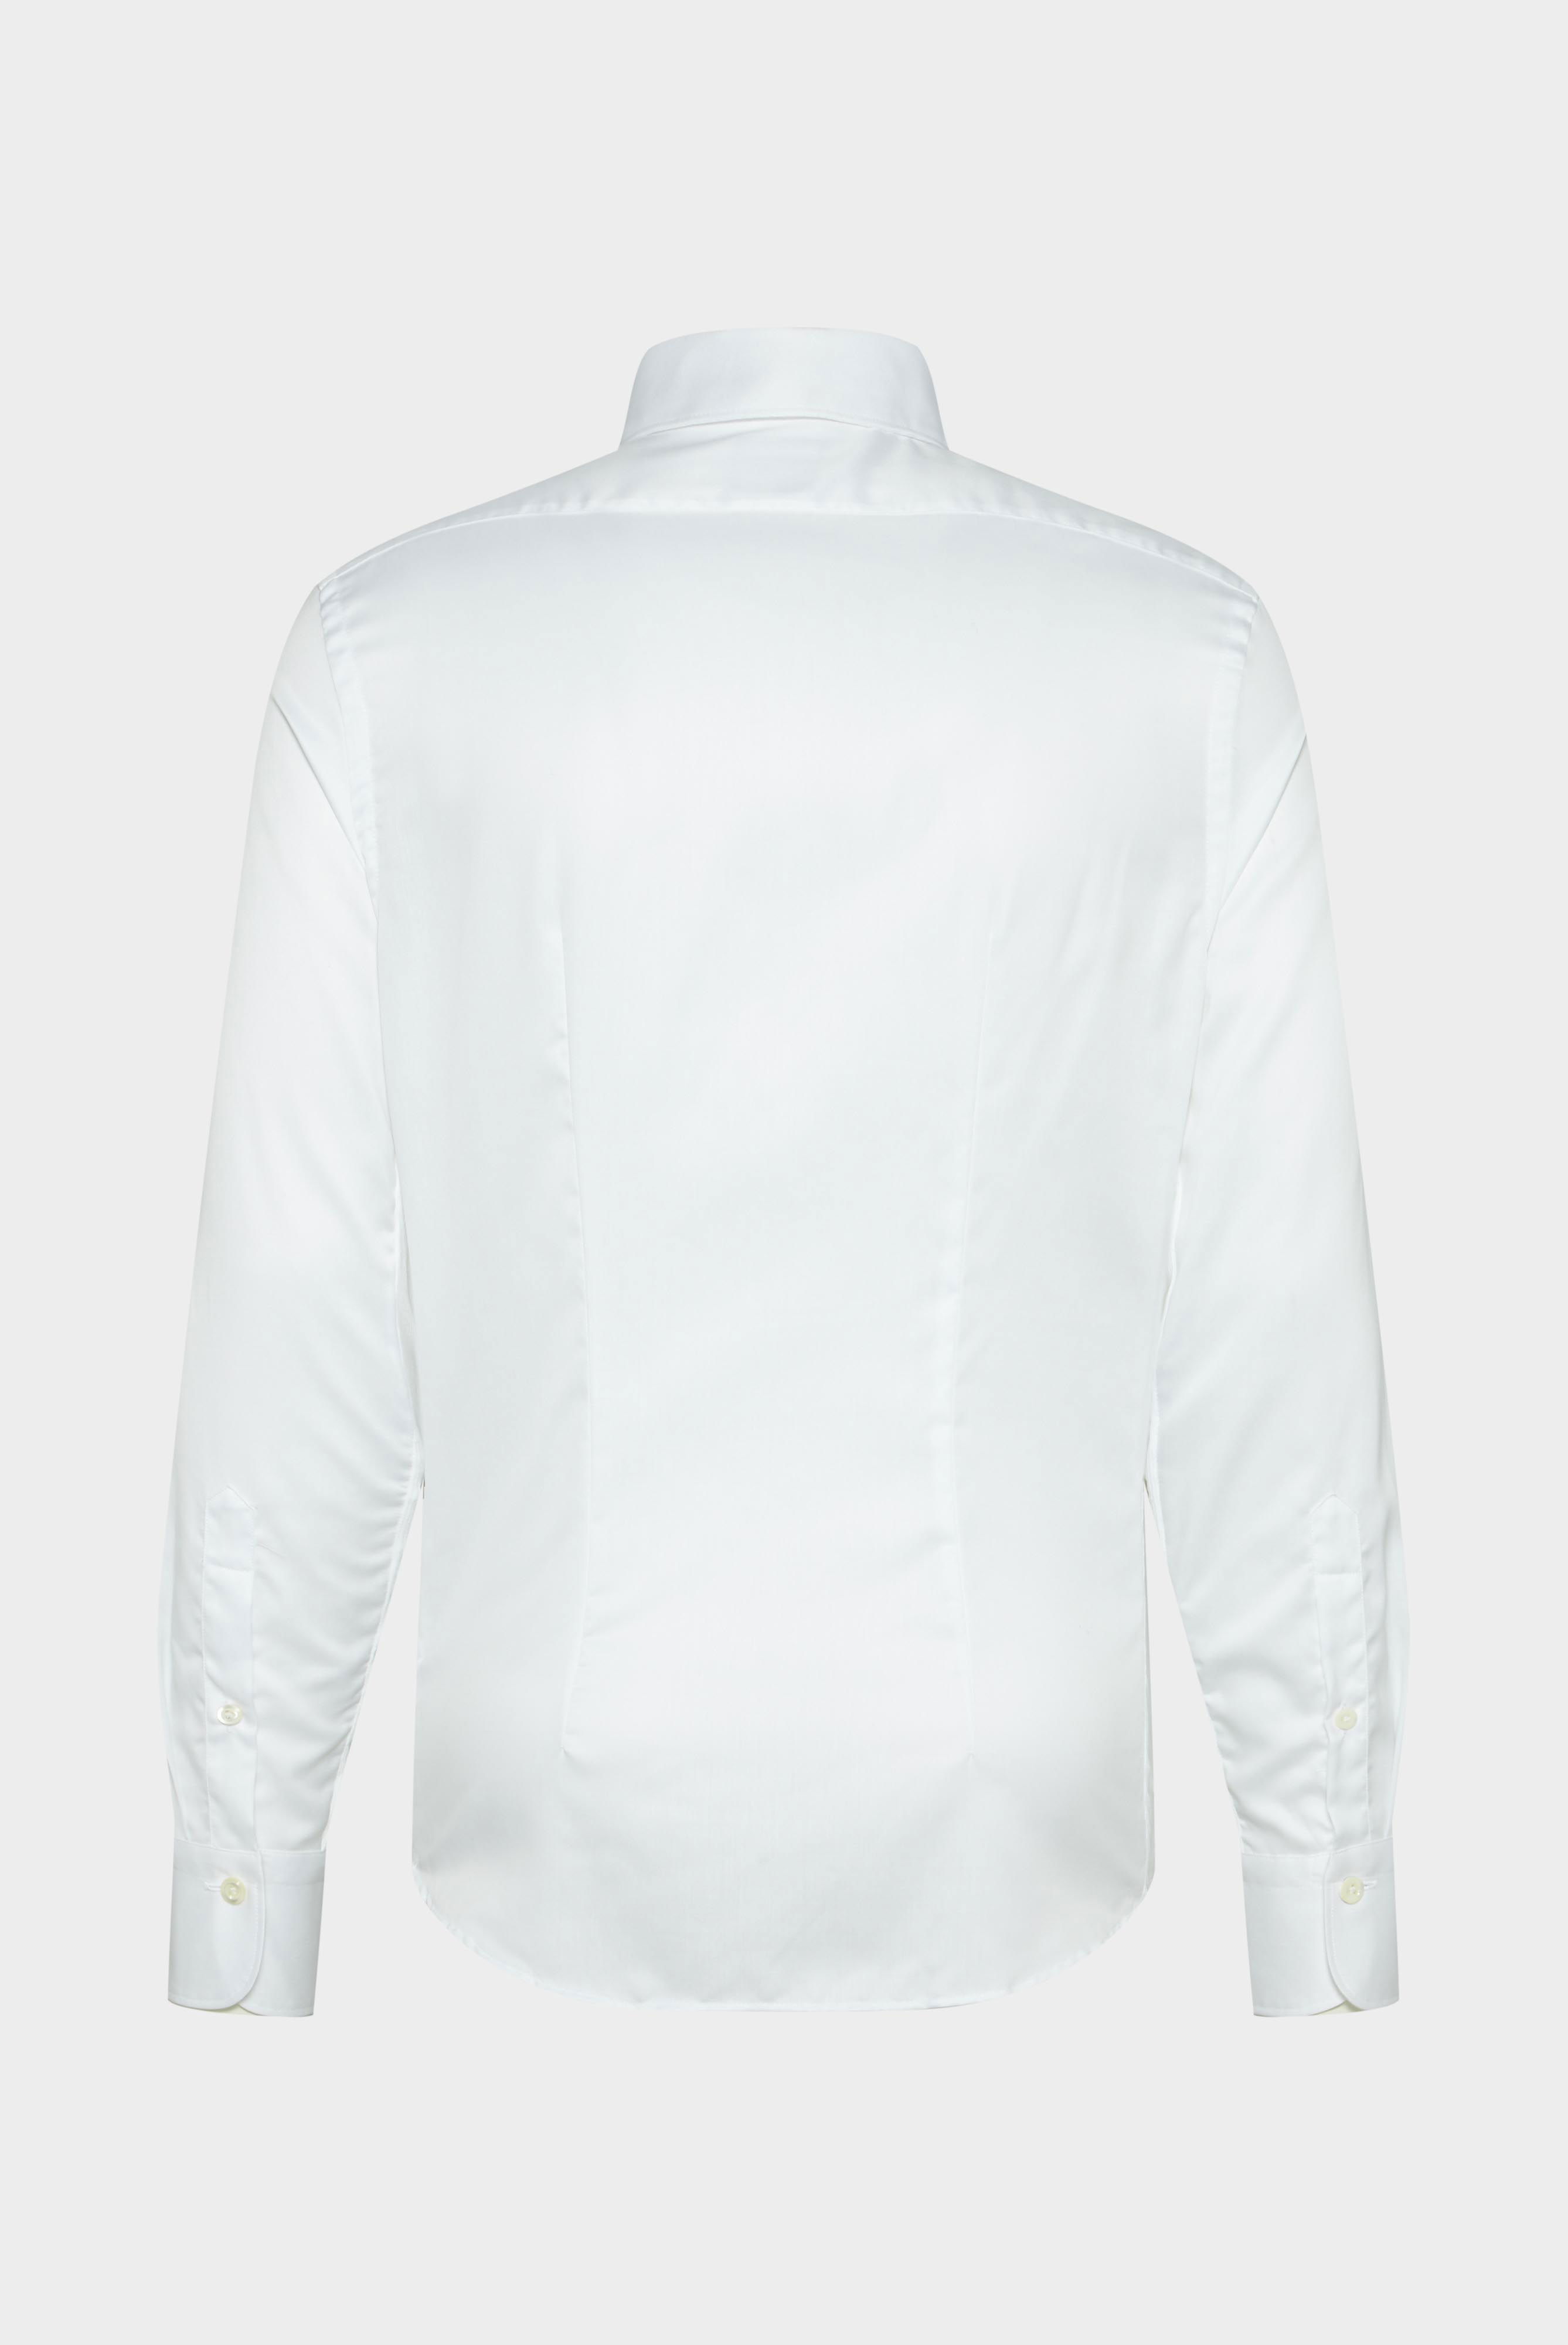 Bügelleichte Hemden+Bügelfreies Hybridshirt mit Jerseyeinsatz Slim Fit+20.2553.0F.132241.000.45